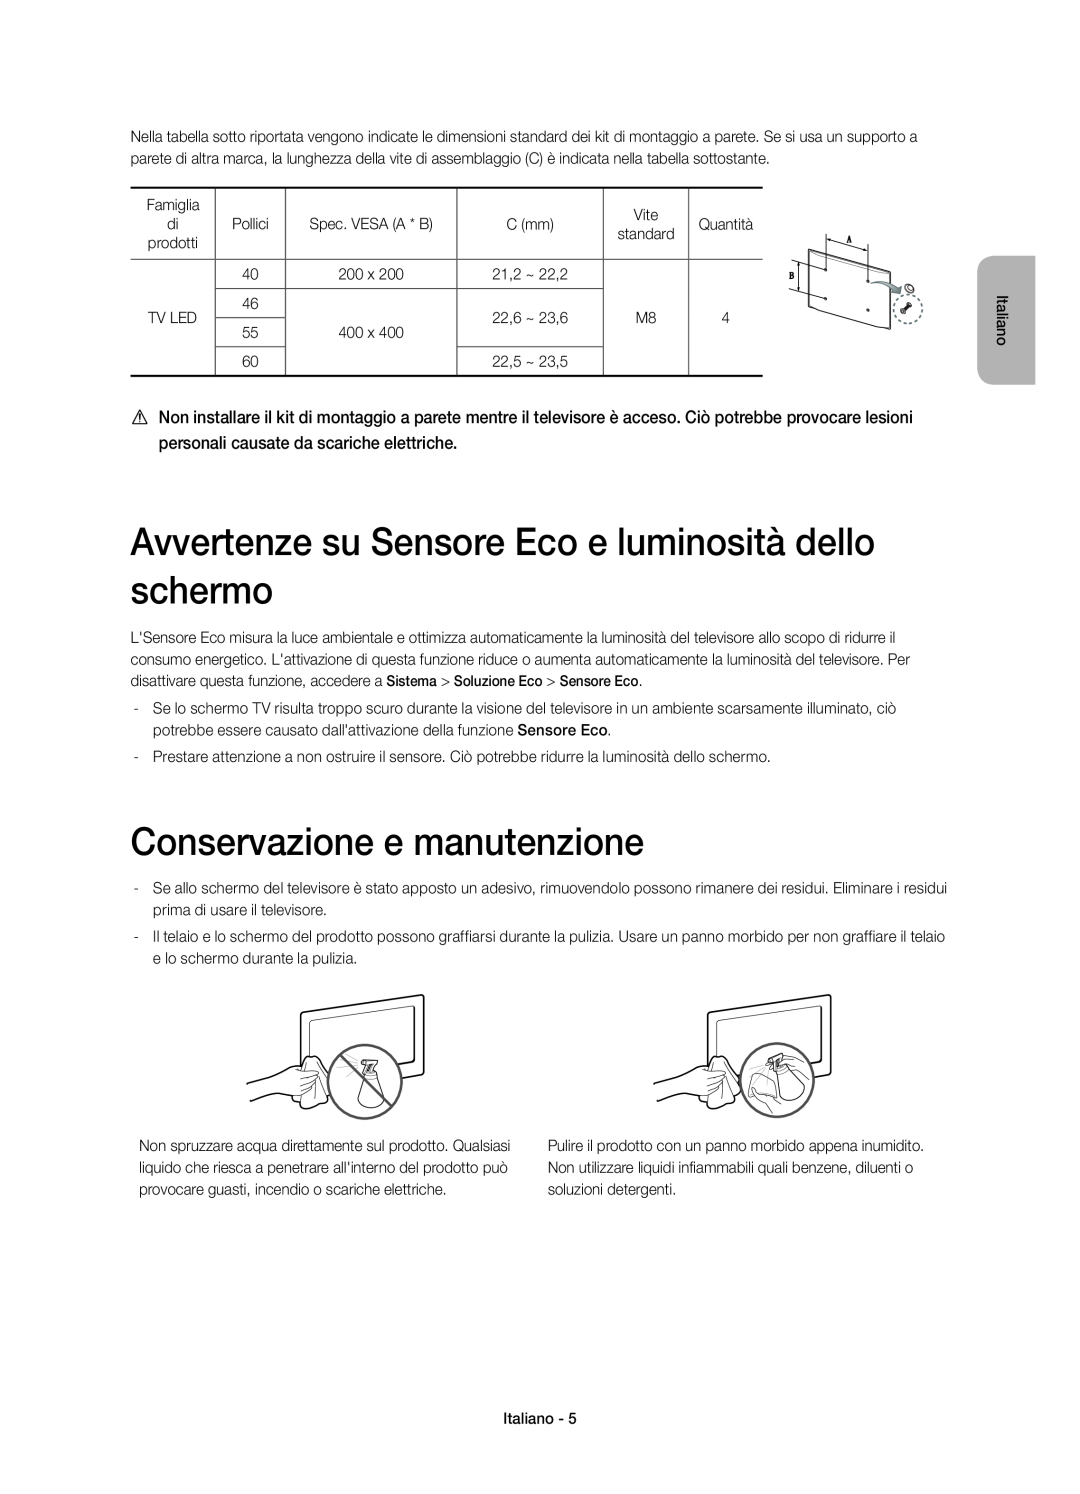 Samsung UE40H7000SZXZT manual Avvertenze su Sensore Eco e luminosità dello schermo, Conservazione e manutenzione, Italiano 